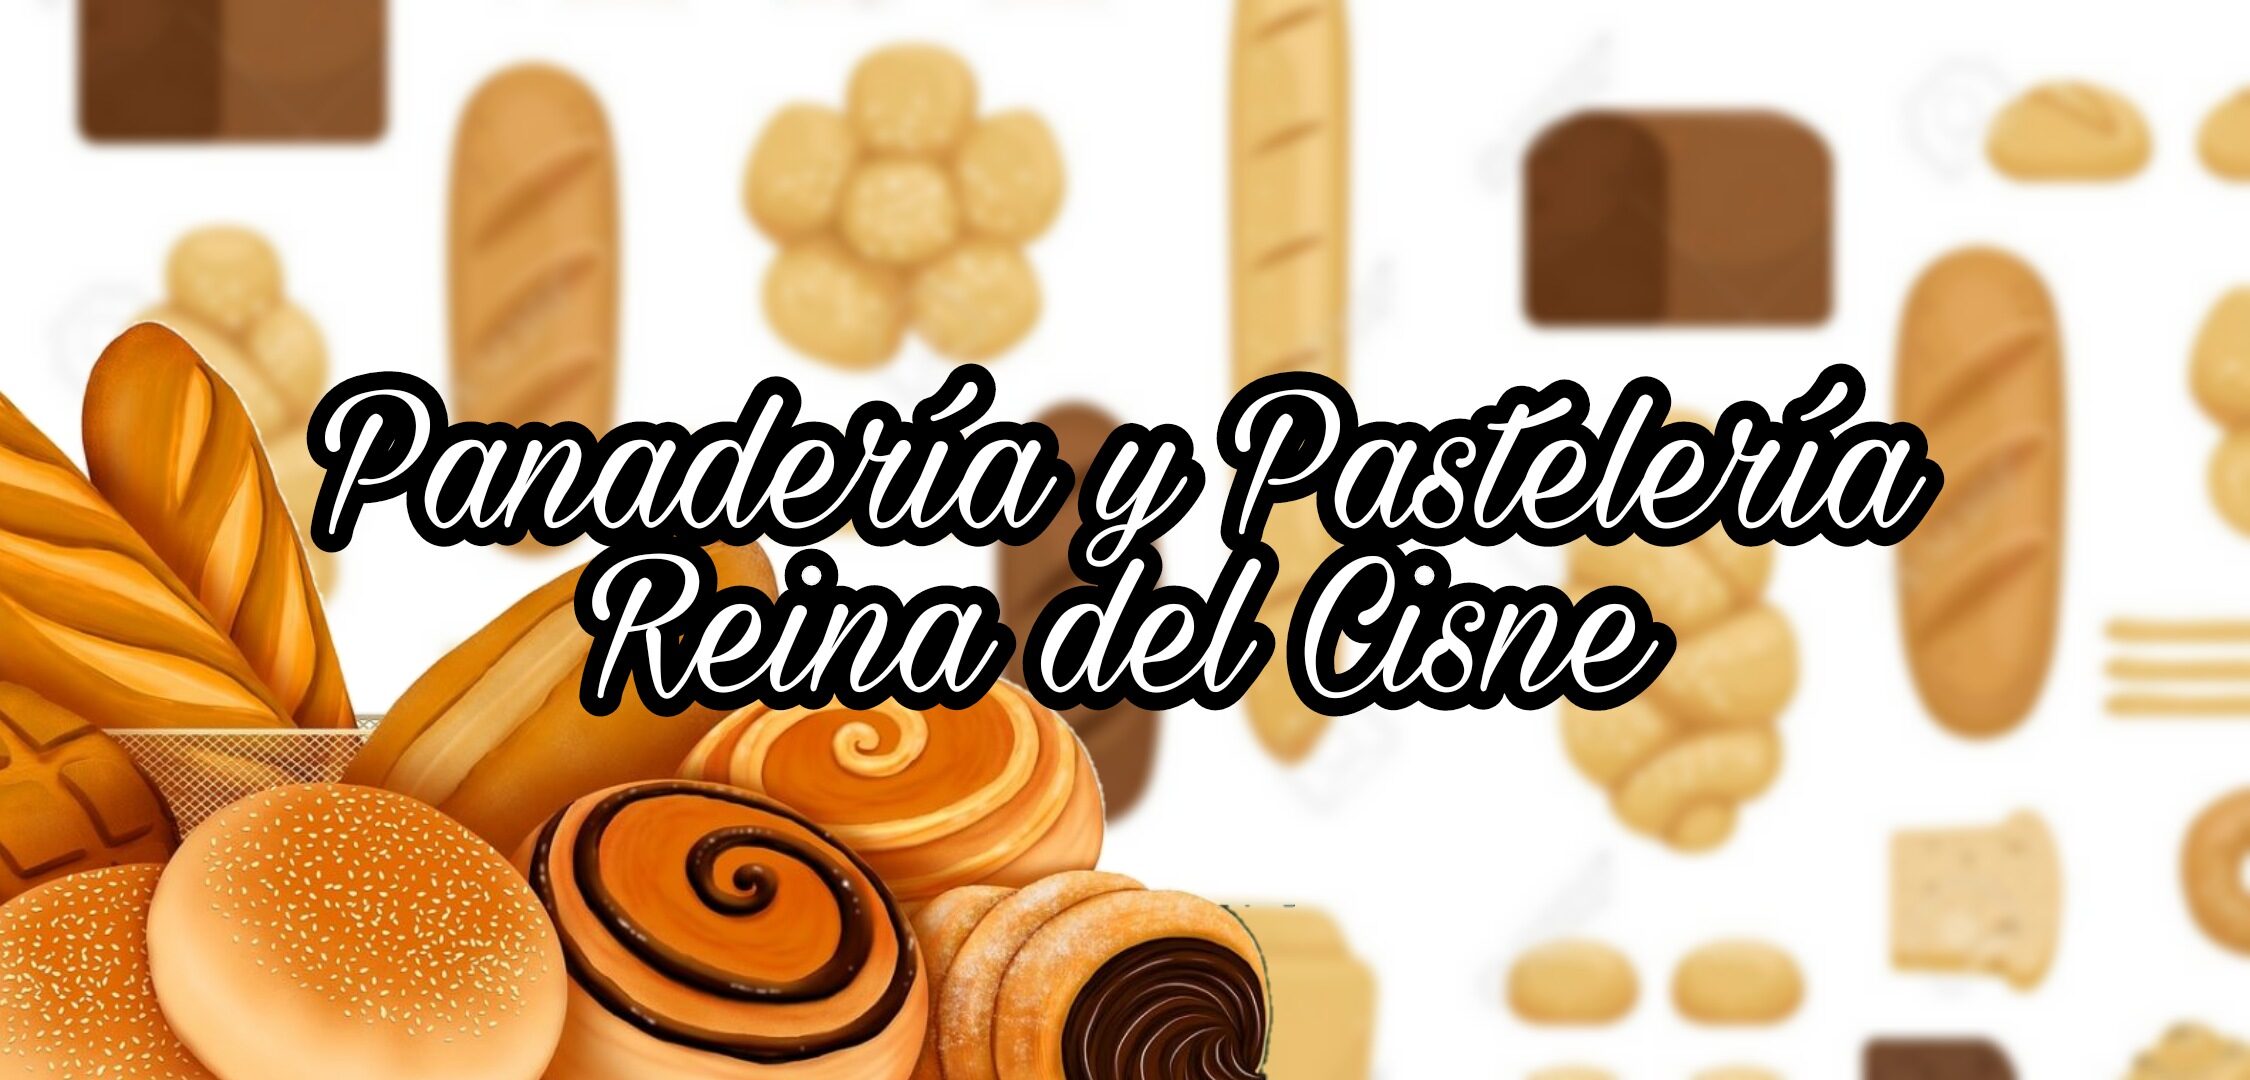 Panadería y Pastelería Reina Del Cisne